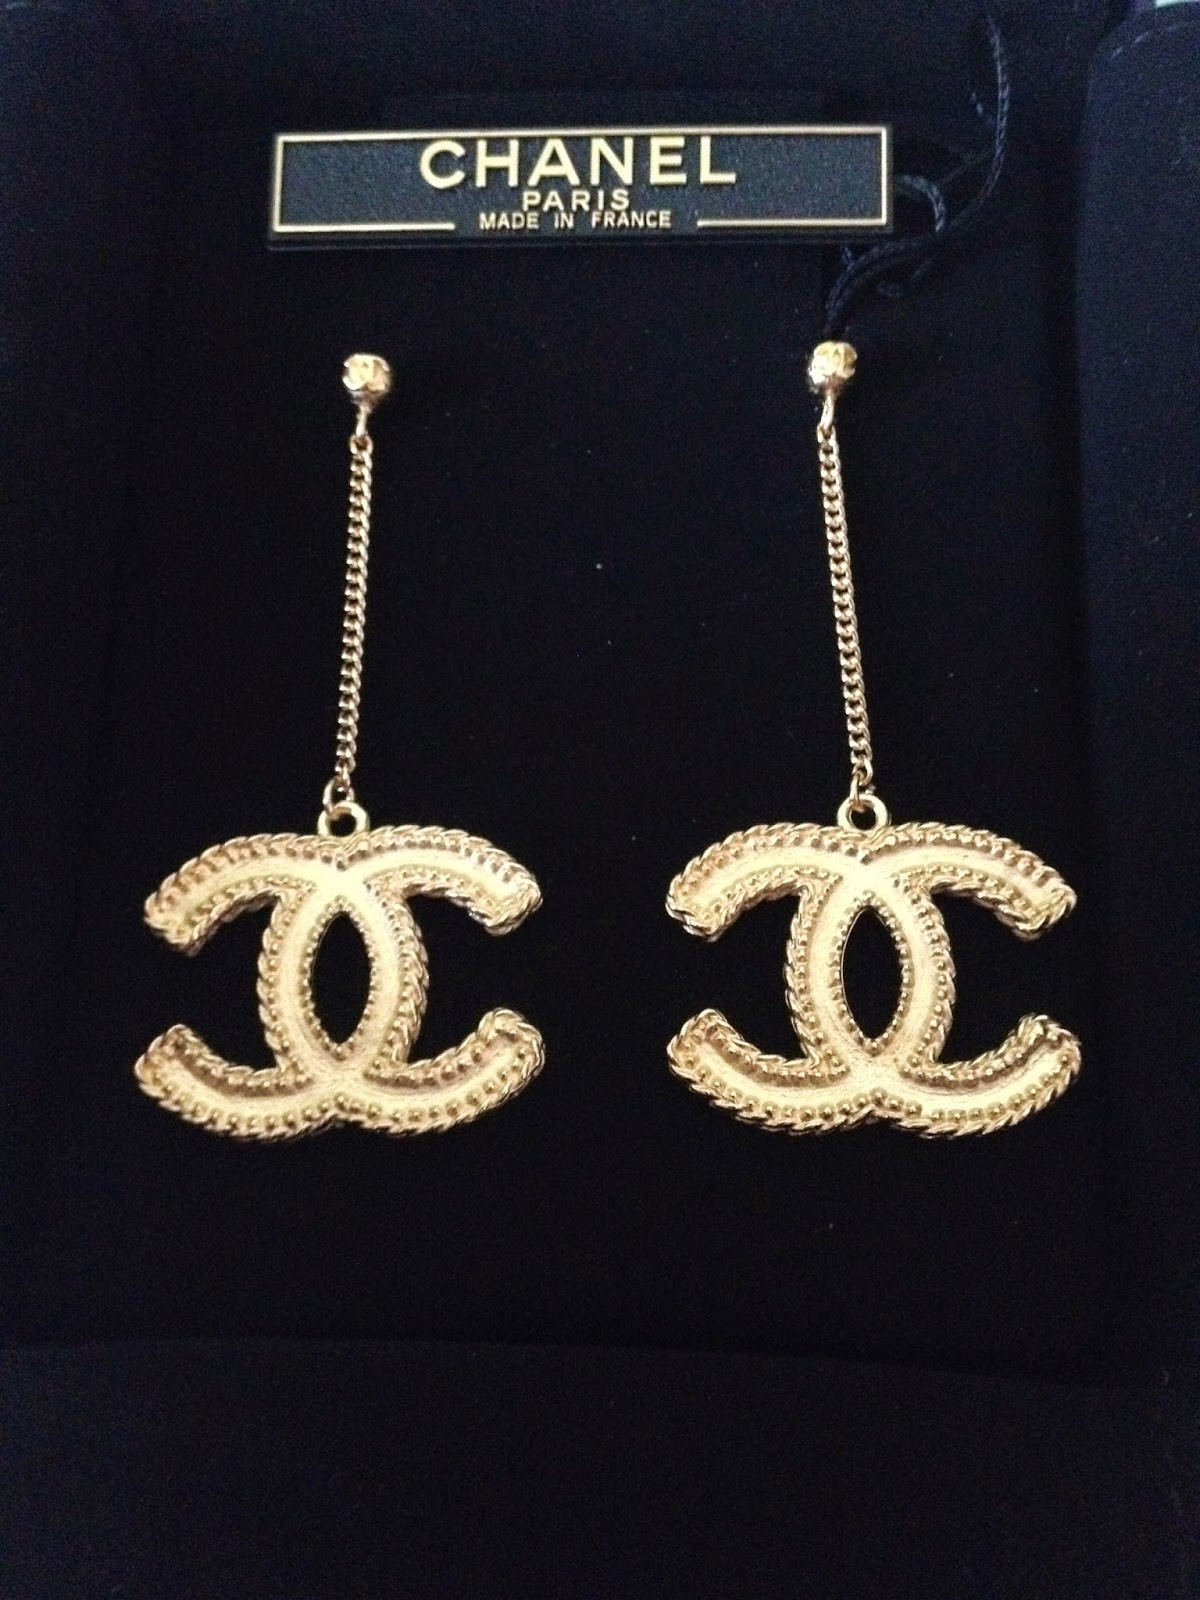 Chanel Earrings Cc
 Chanel Earring Review Chanel Earrings LARGE CC LOGO Gold